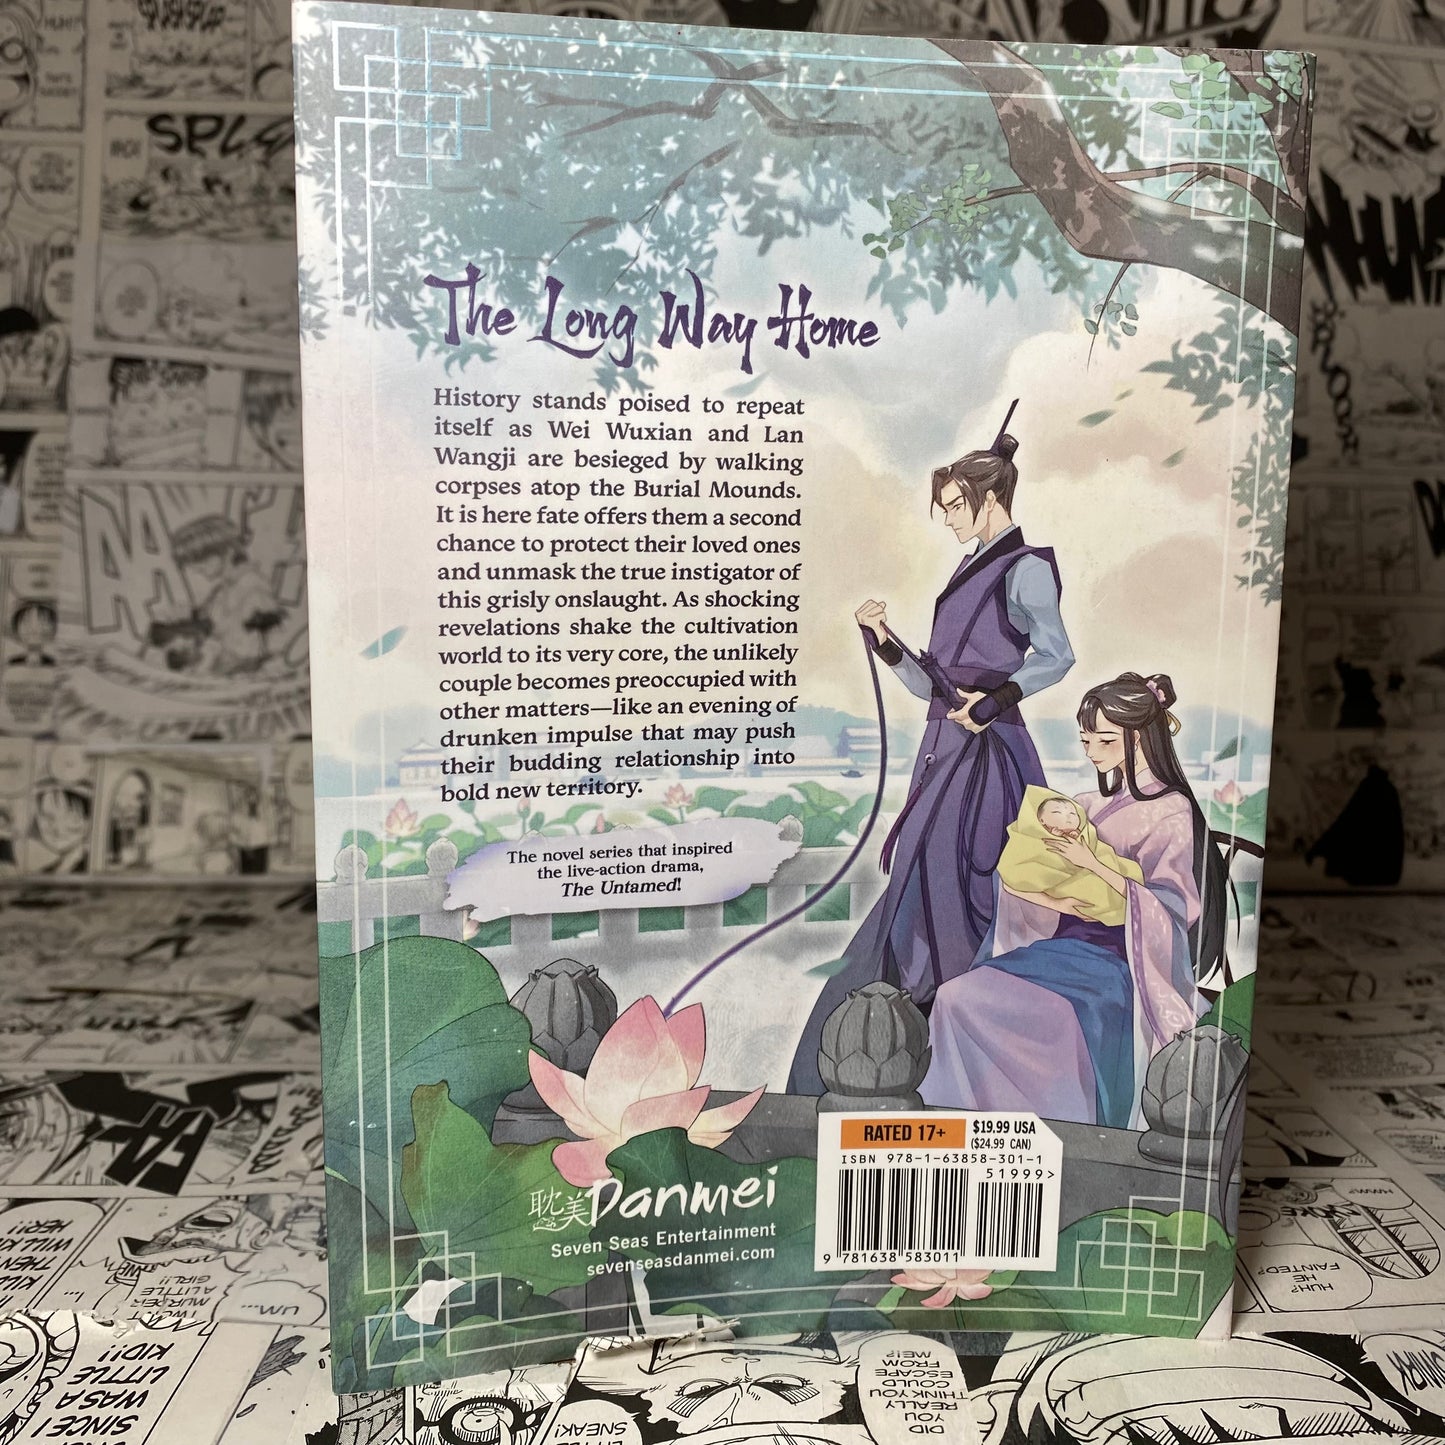 Grandmaster of Demonic Cultivation Mo Dao Zu Shi Light Novel Vol 4 Paperback by Mo Xiang Tong Xiu